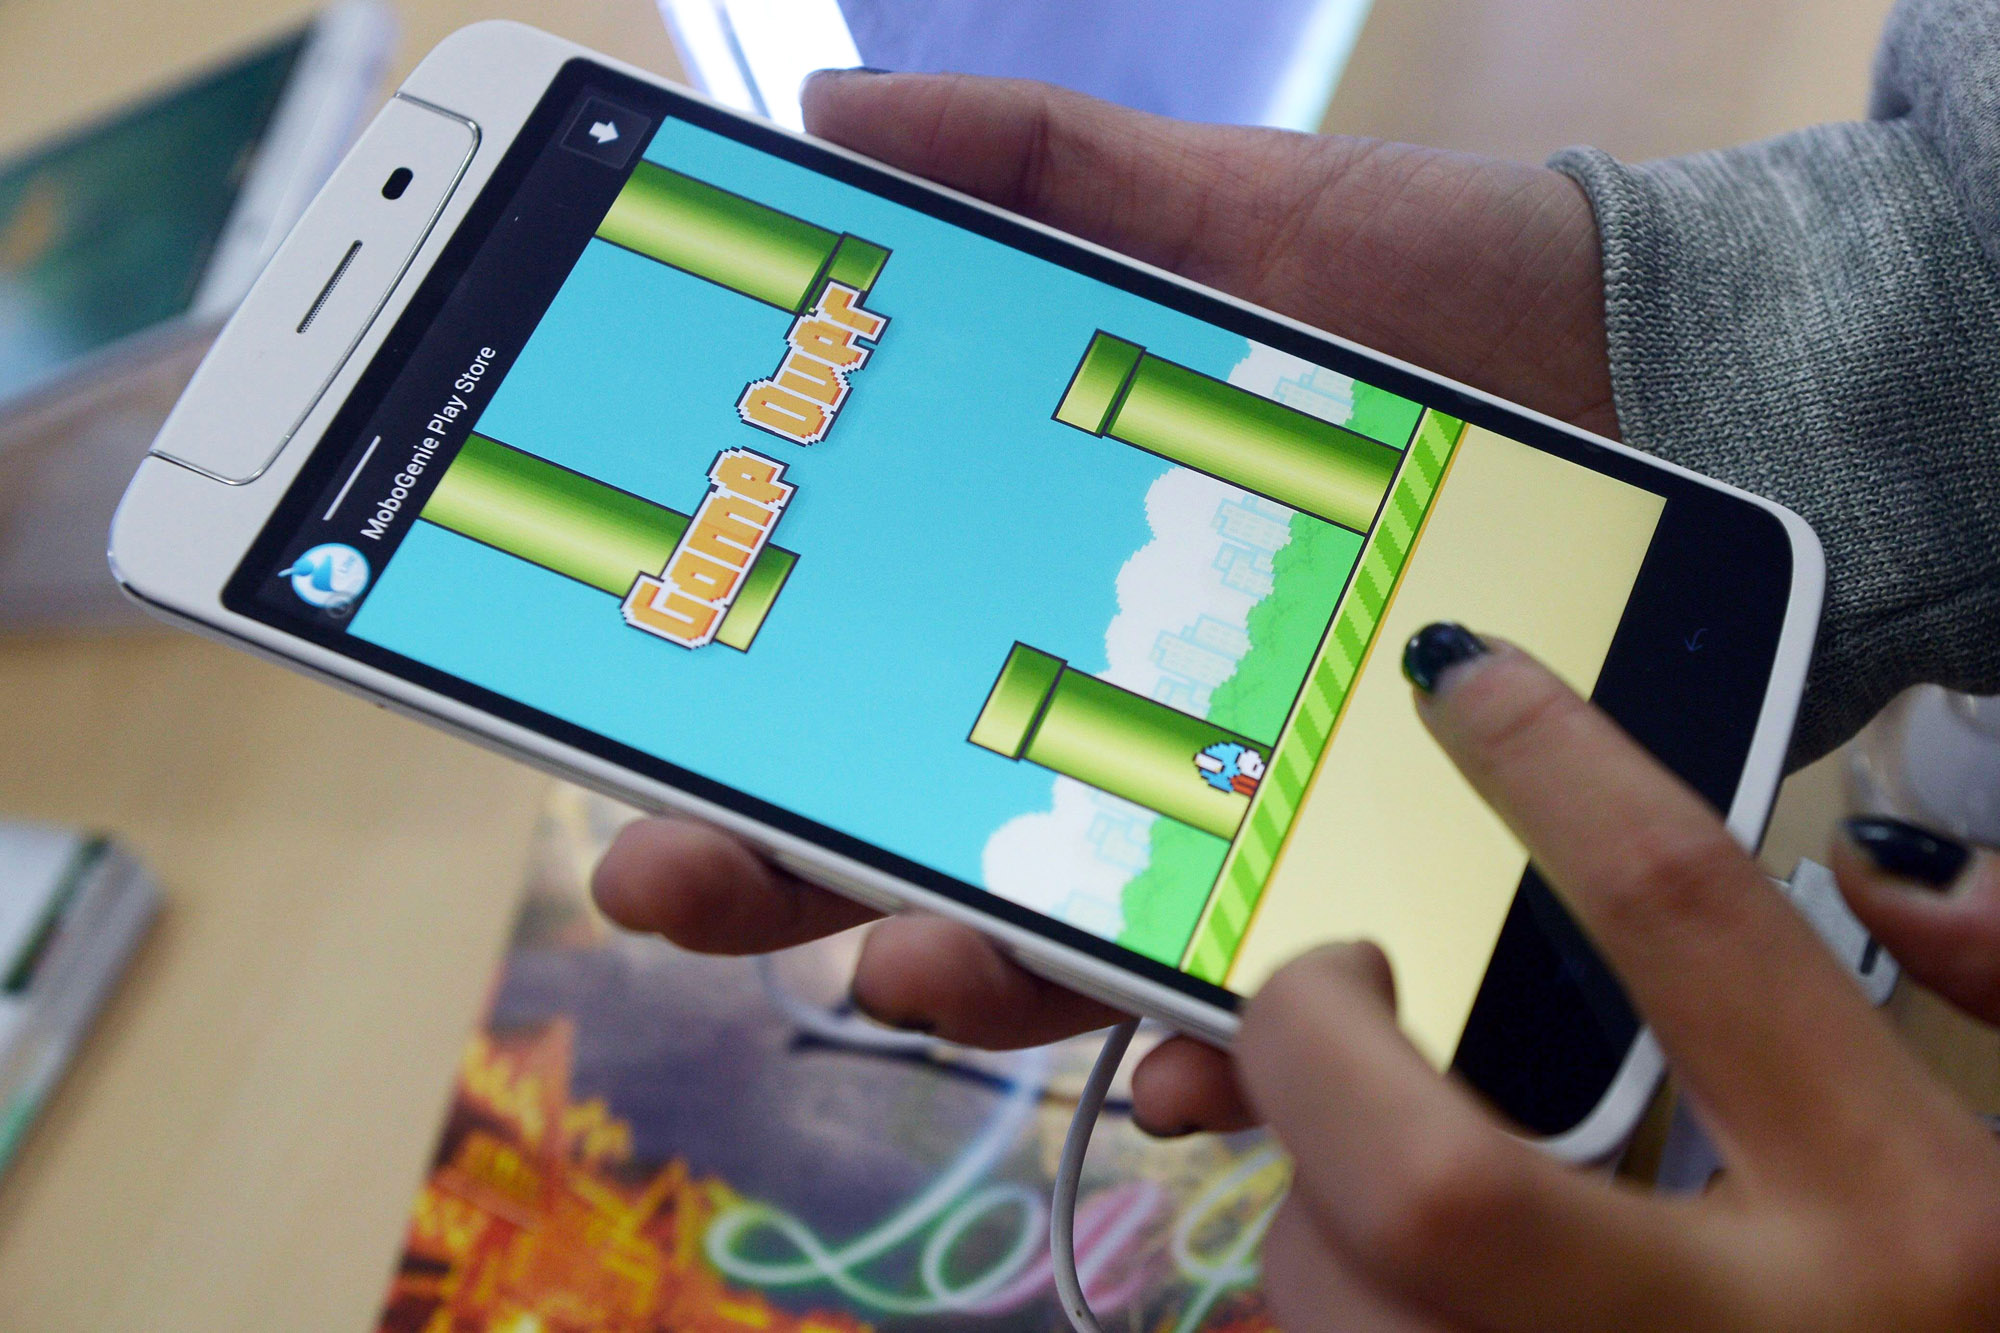 Hiện tượng Flappy Bird được đánh giá là 1 trong 10 sự kiện ITC tiêu biểu của Việt Nam